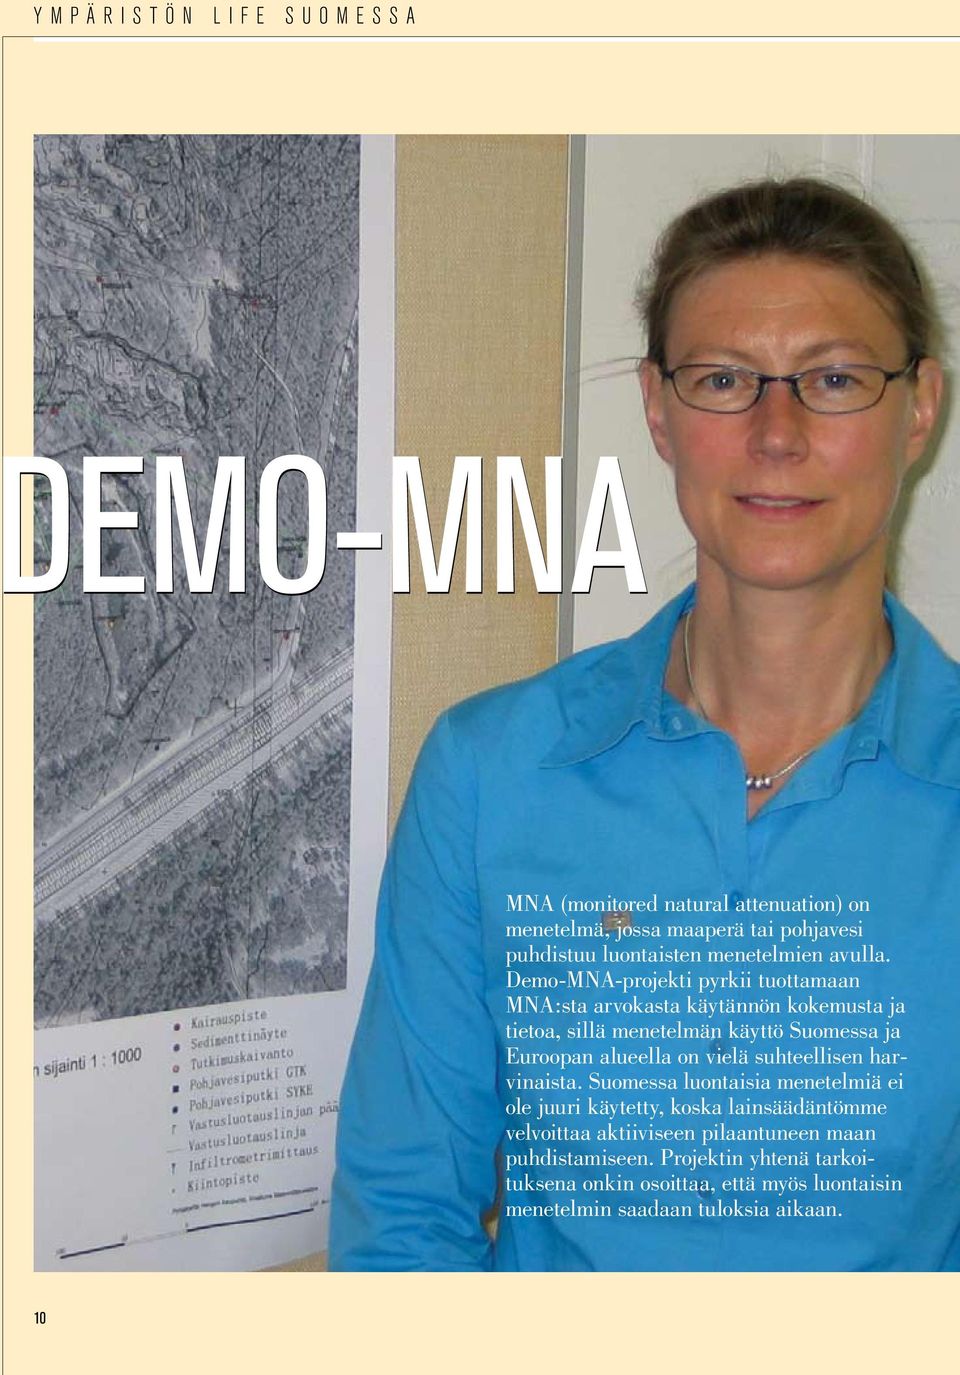 Demo-MNA-projekti pyrkii tuottamaan MNA:sta arvokasta käytännön kokemusta ja tietoa, sillä menetelmän käyttö Suomessa ja Euroopan alueella on